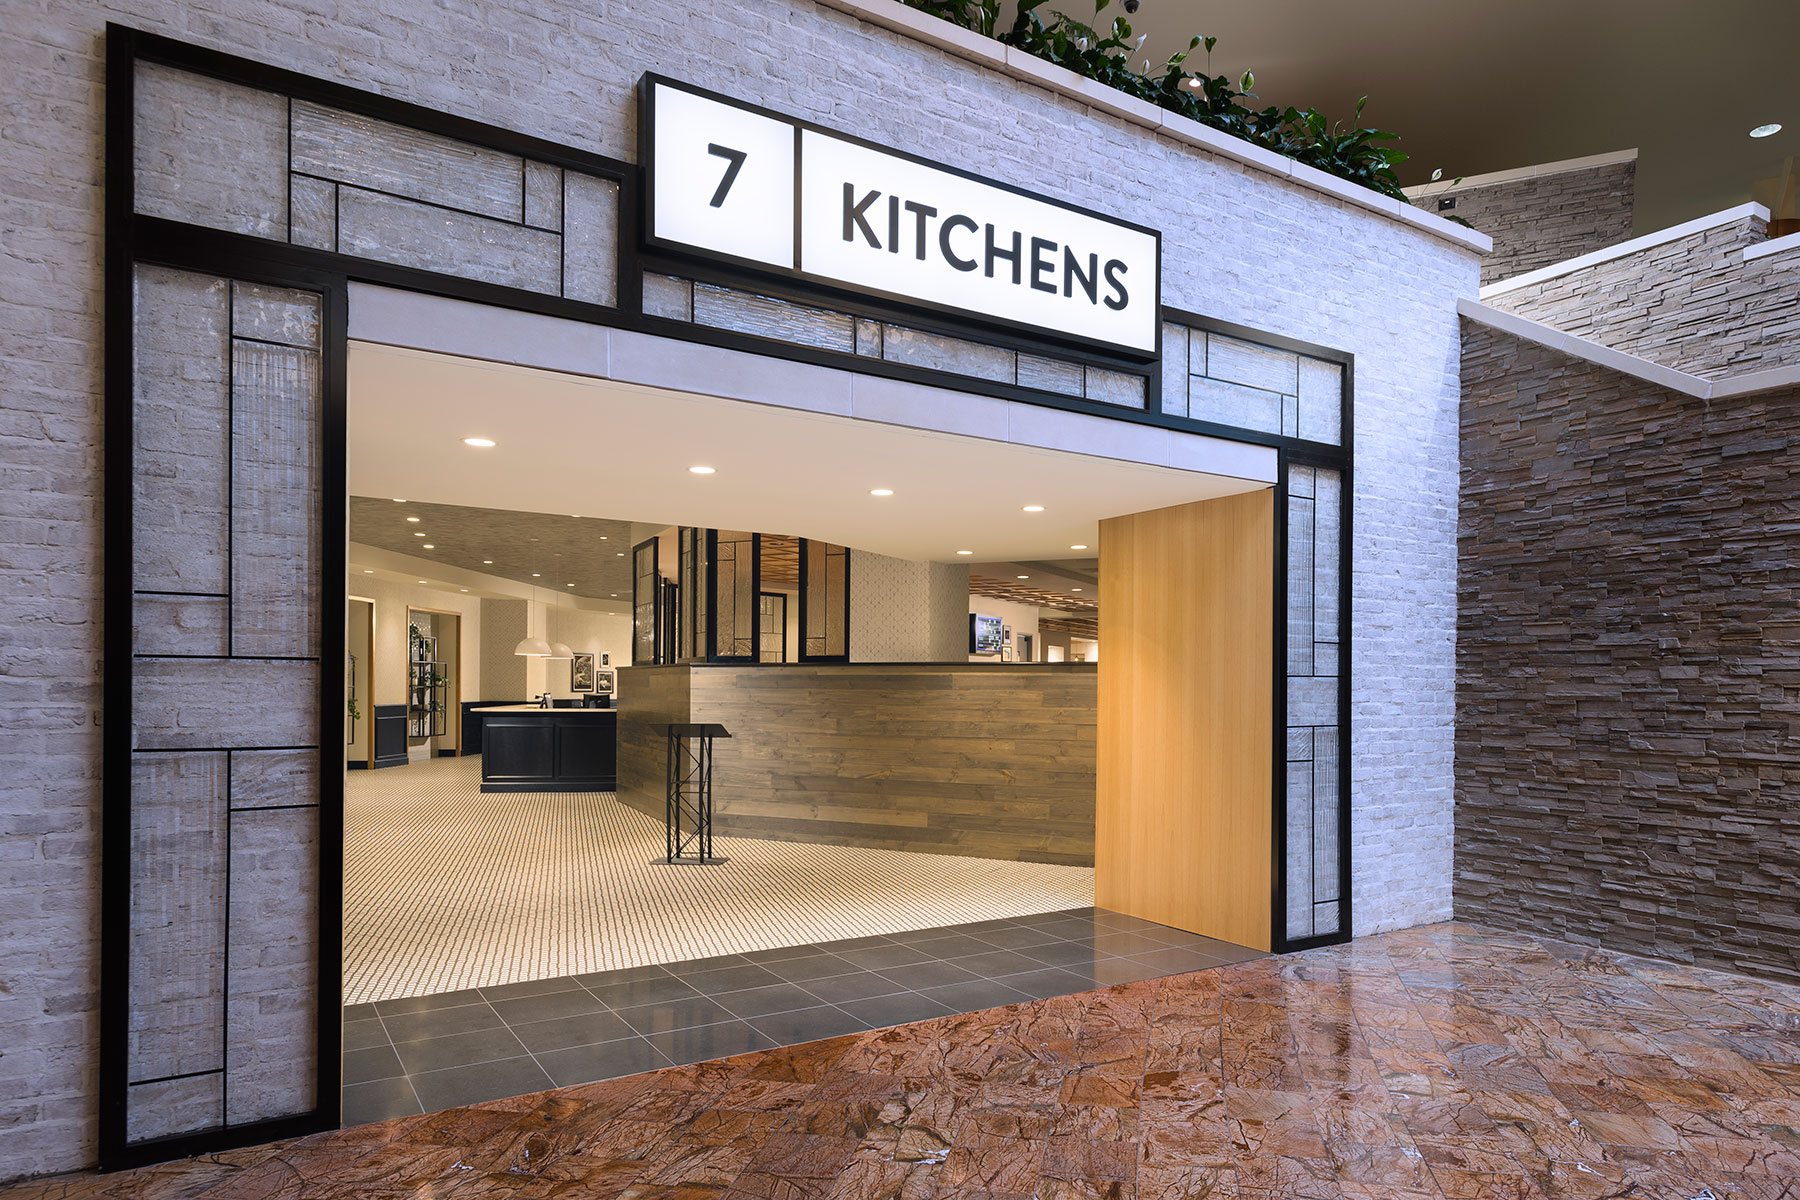 7 Kitchens Best Restaurant Buffet CNY Turning Stone Resort